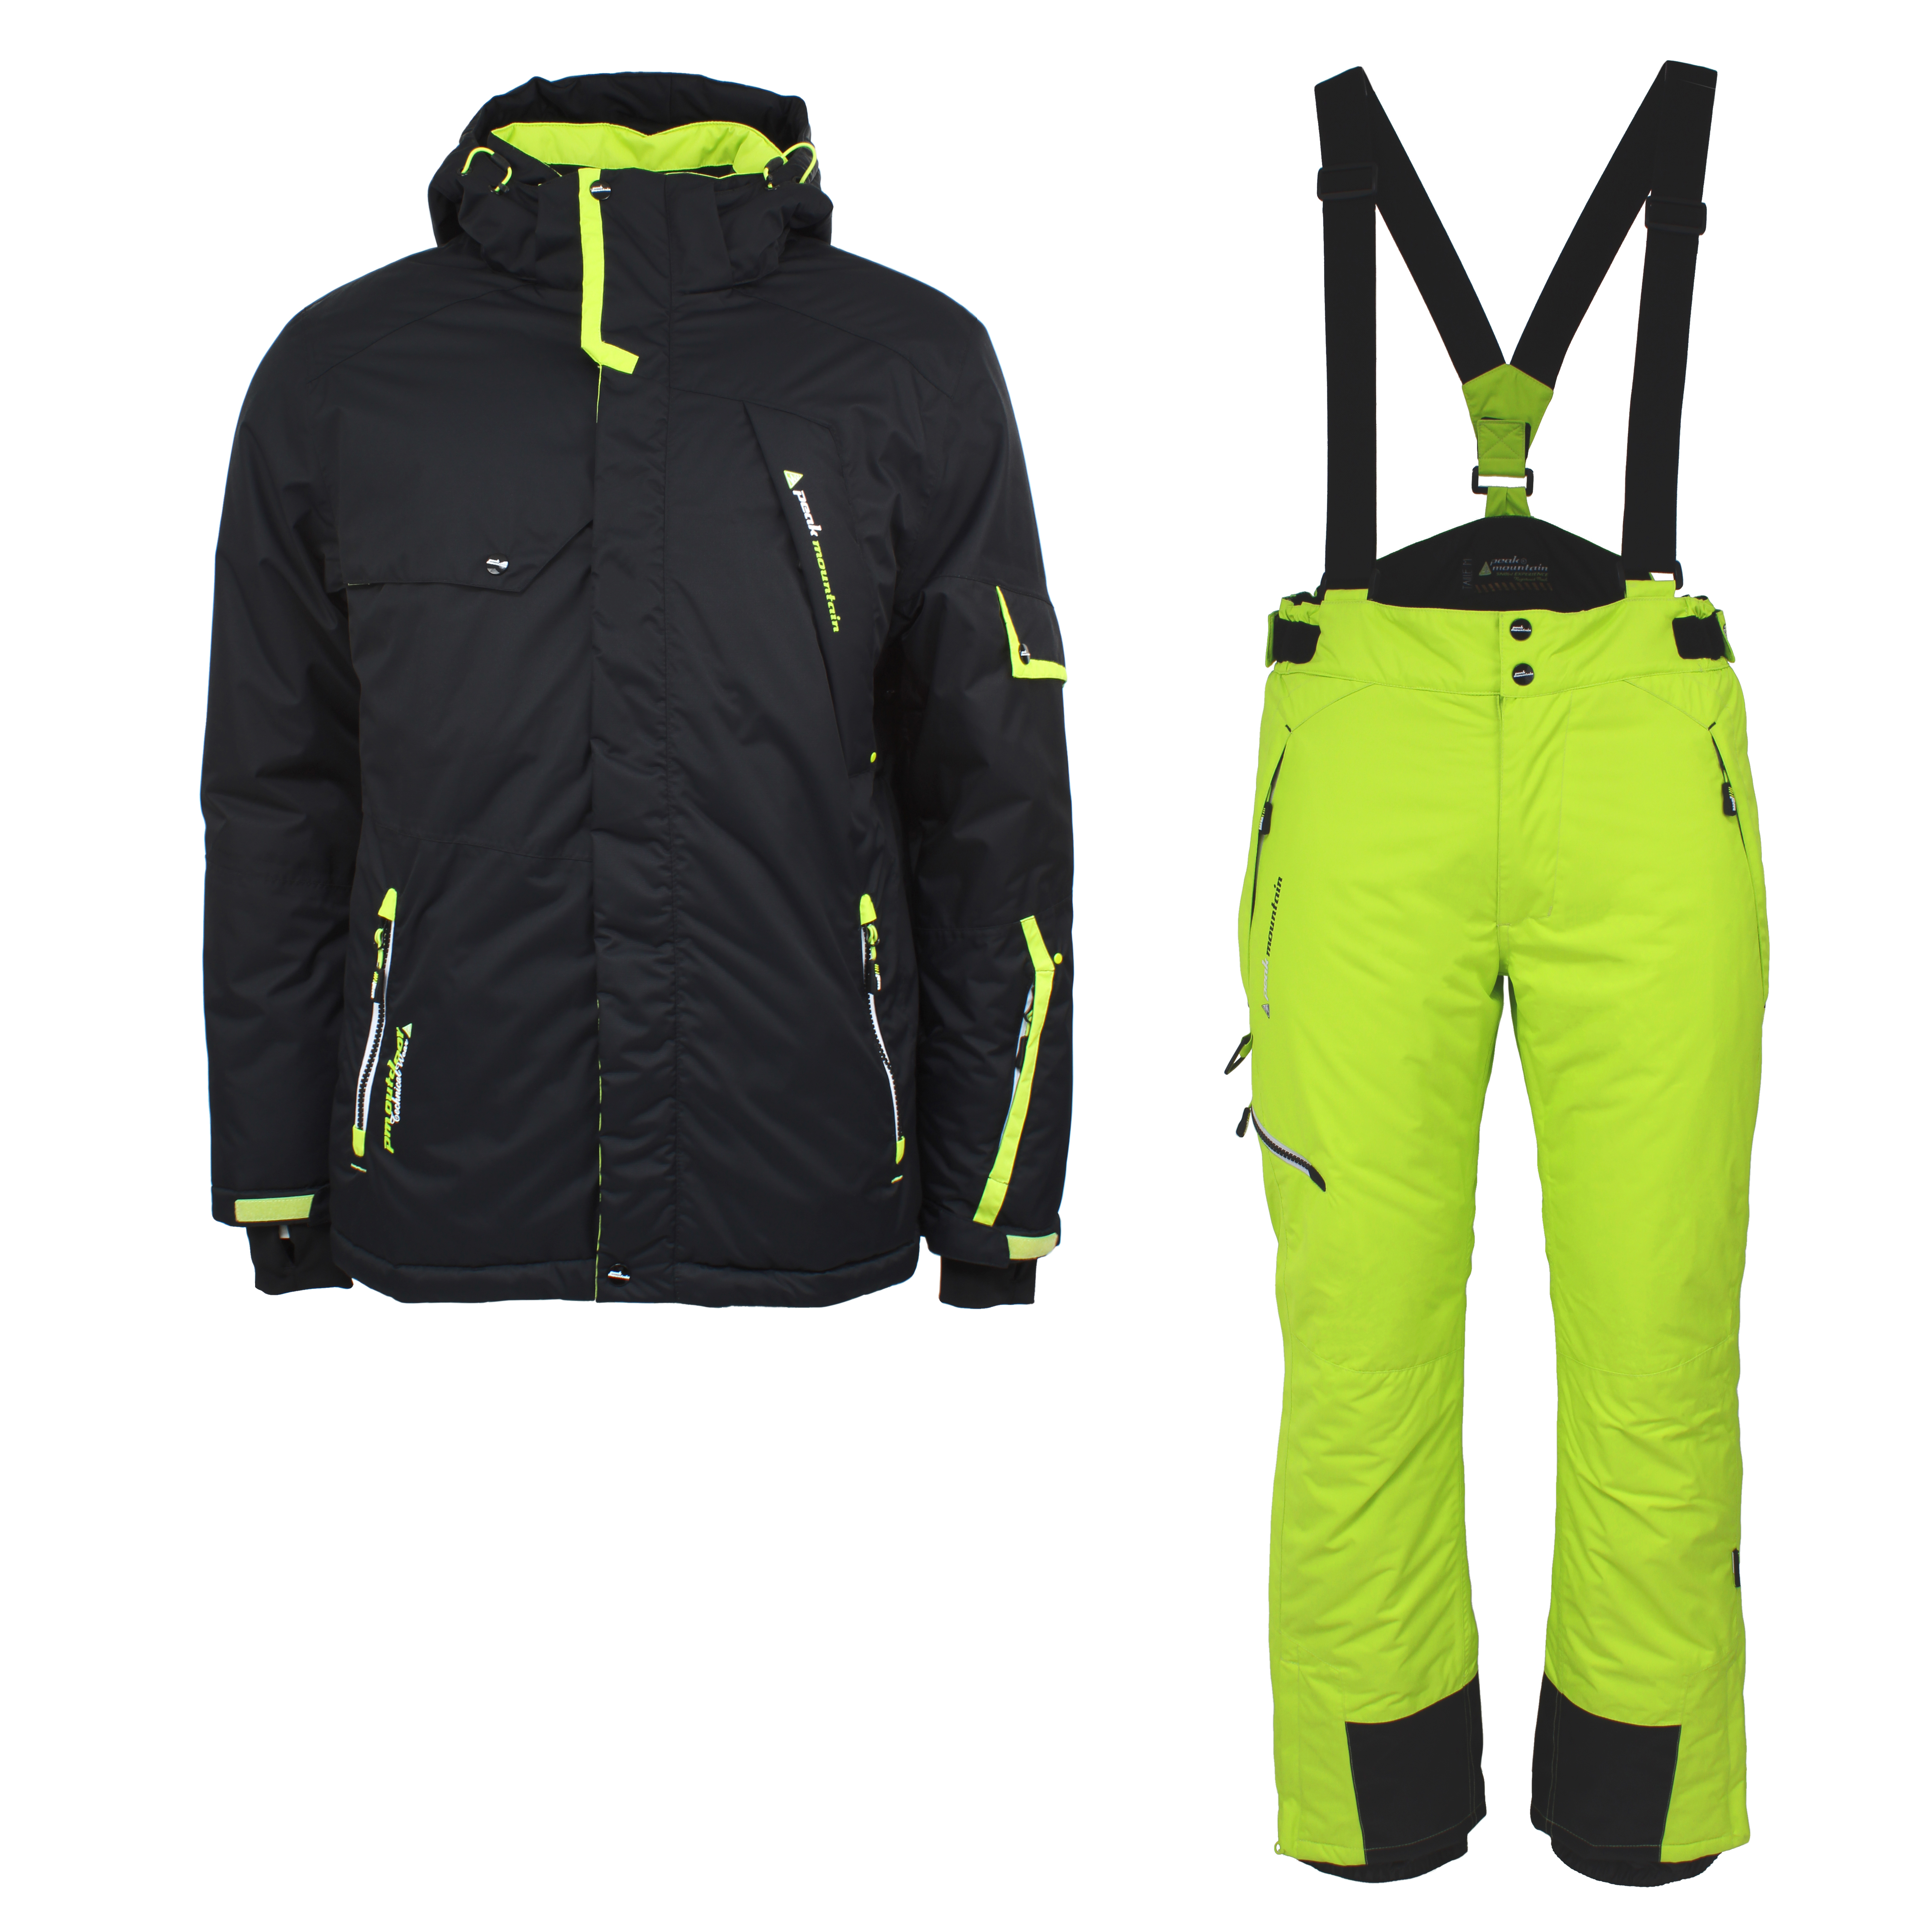 Mode homme sur les pistes de ski : imprimés, kaki et couleurs contrastées